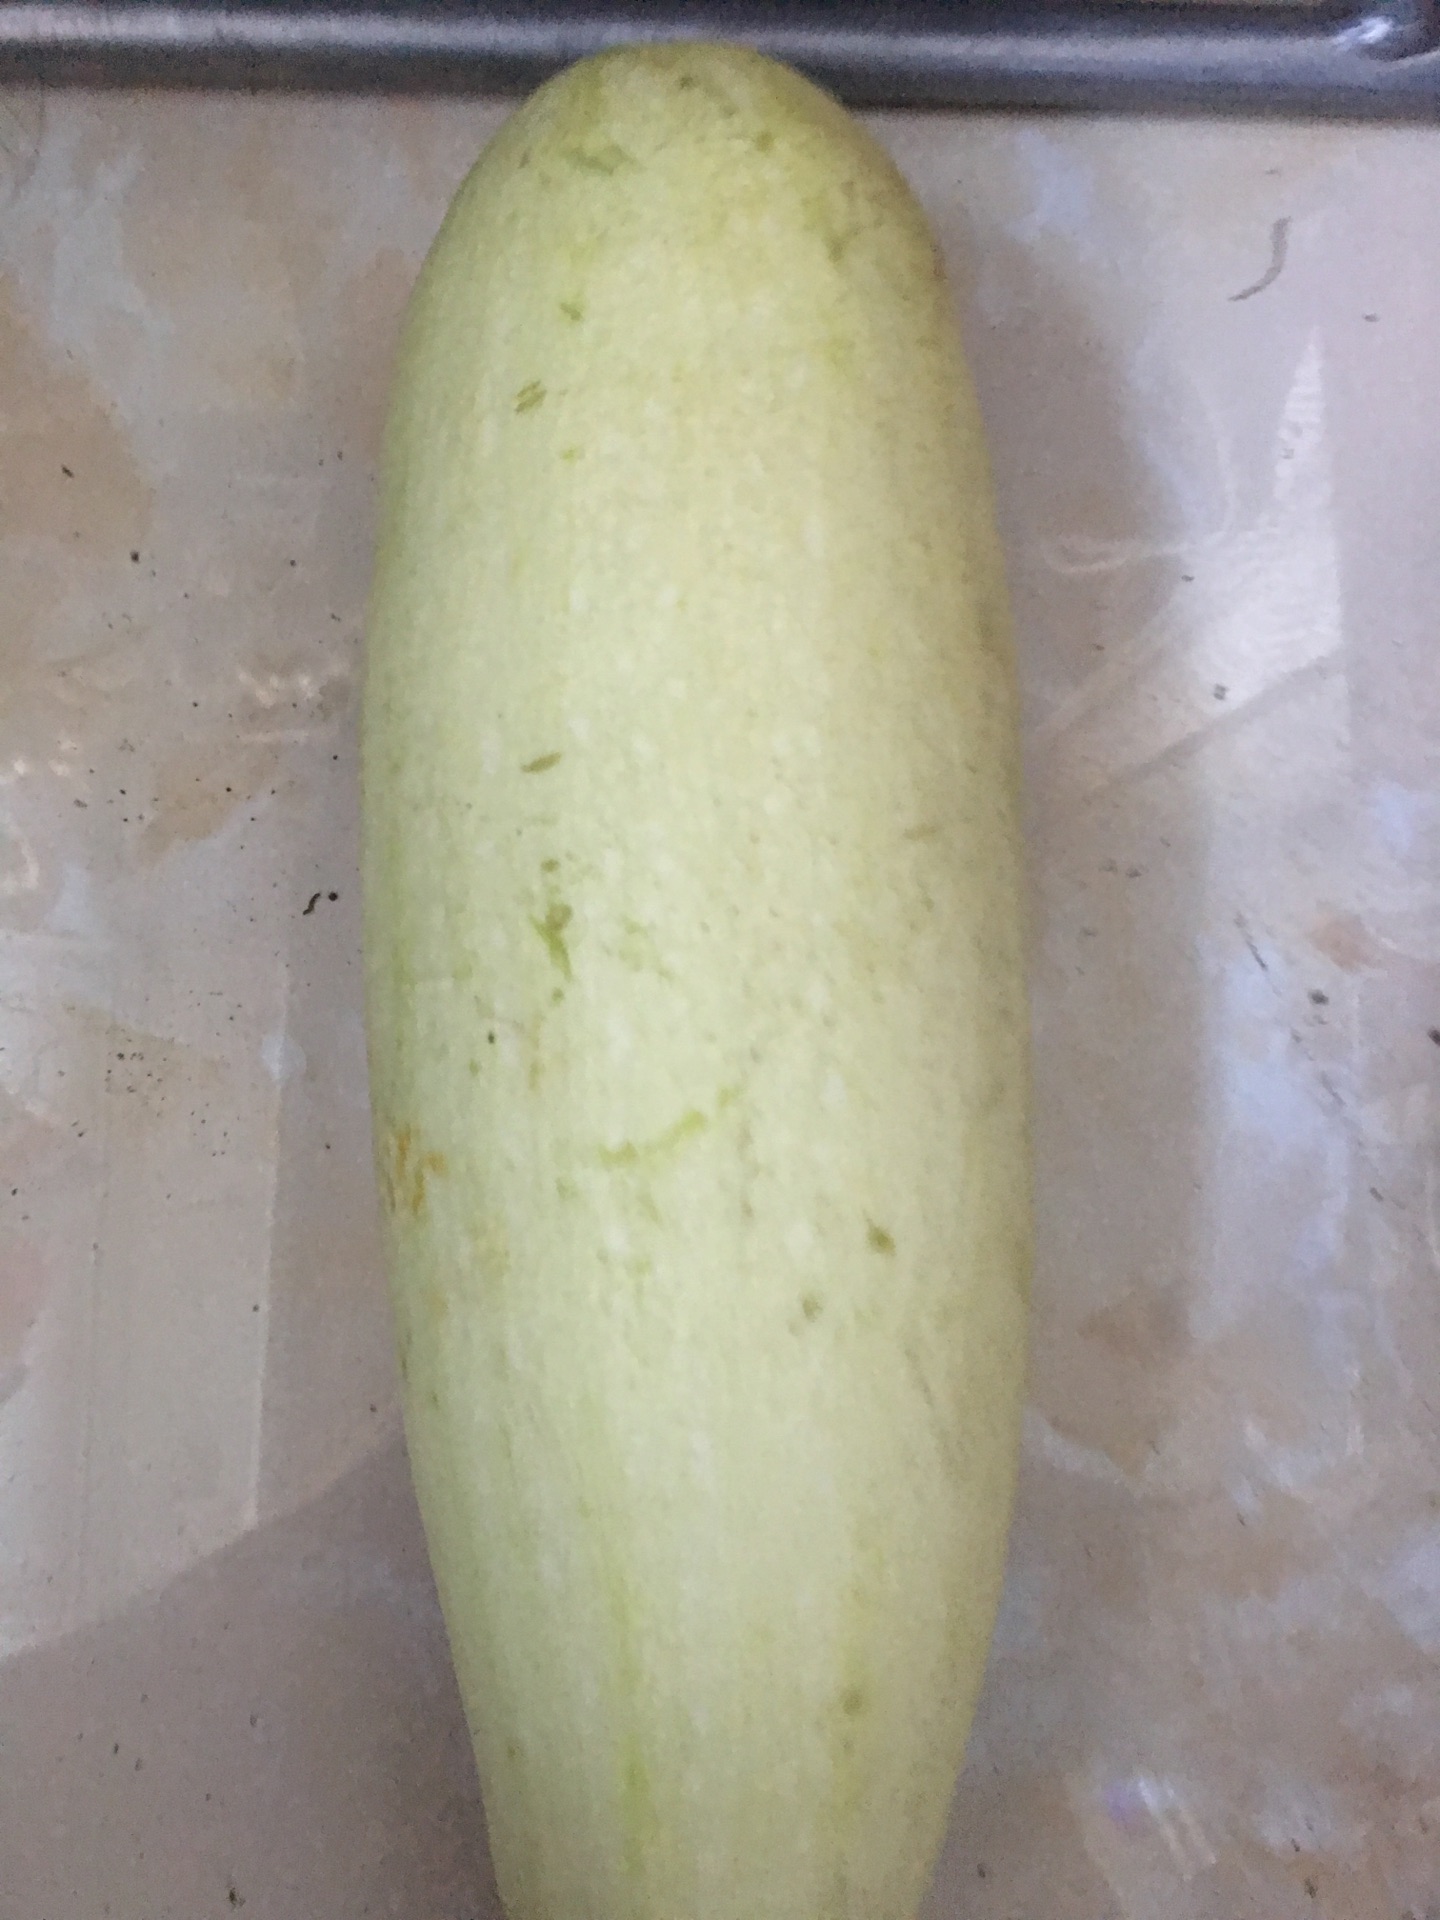 洋香瓜(Melon) 瓜瓜瓜: 品種選擇